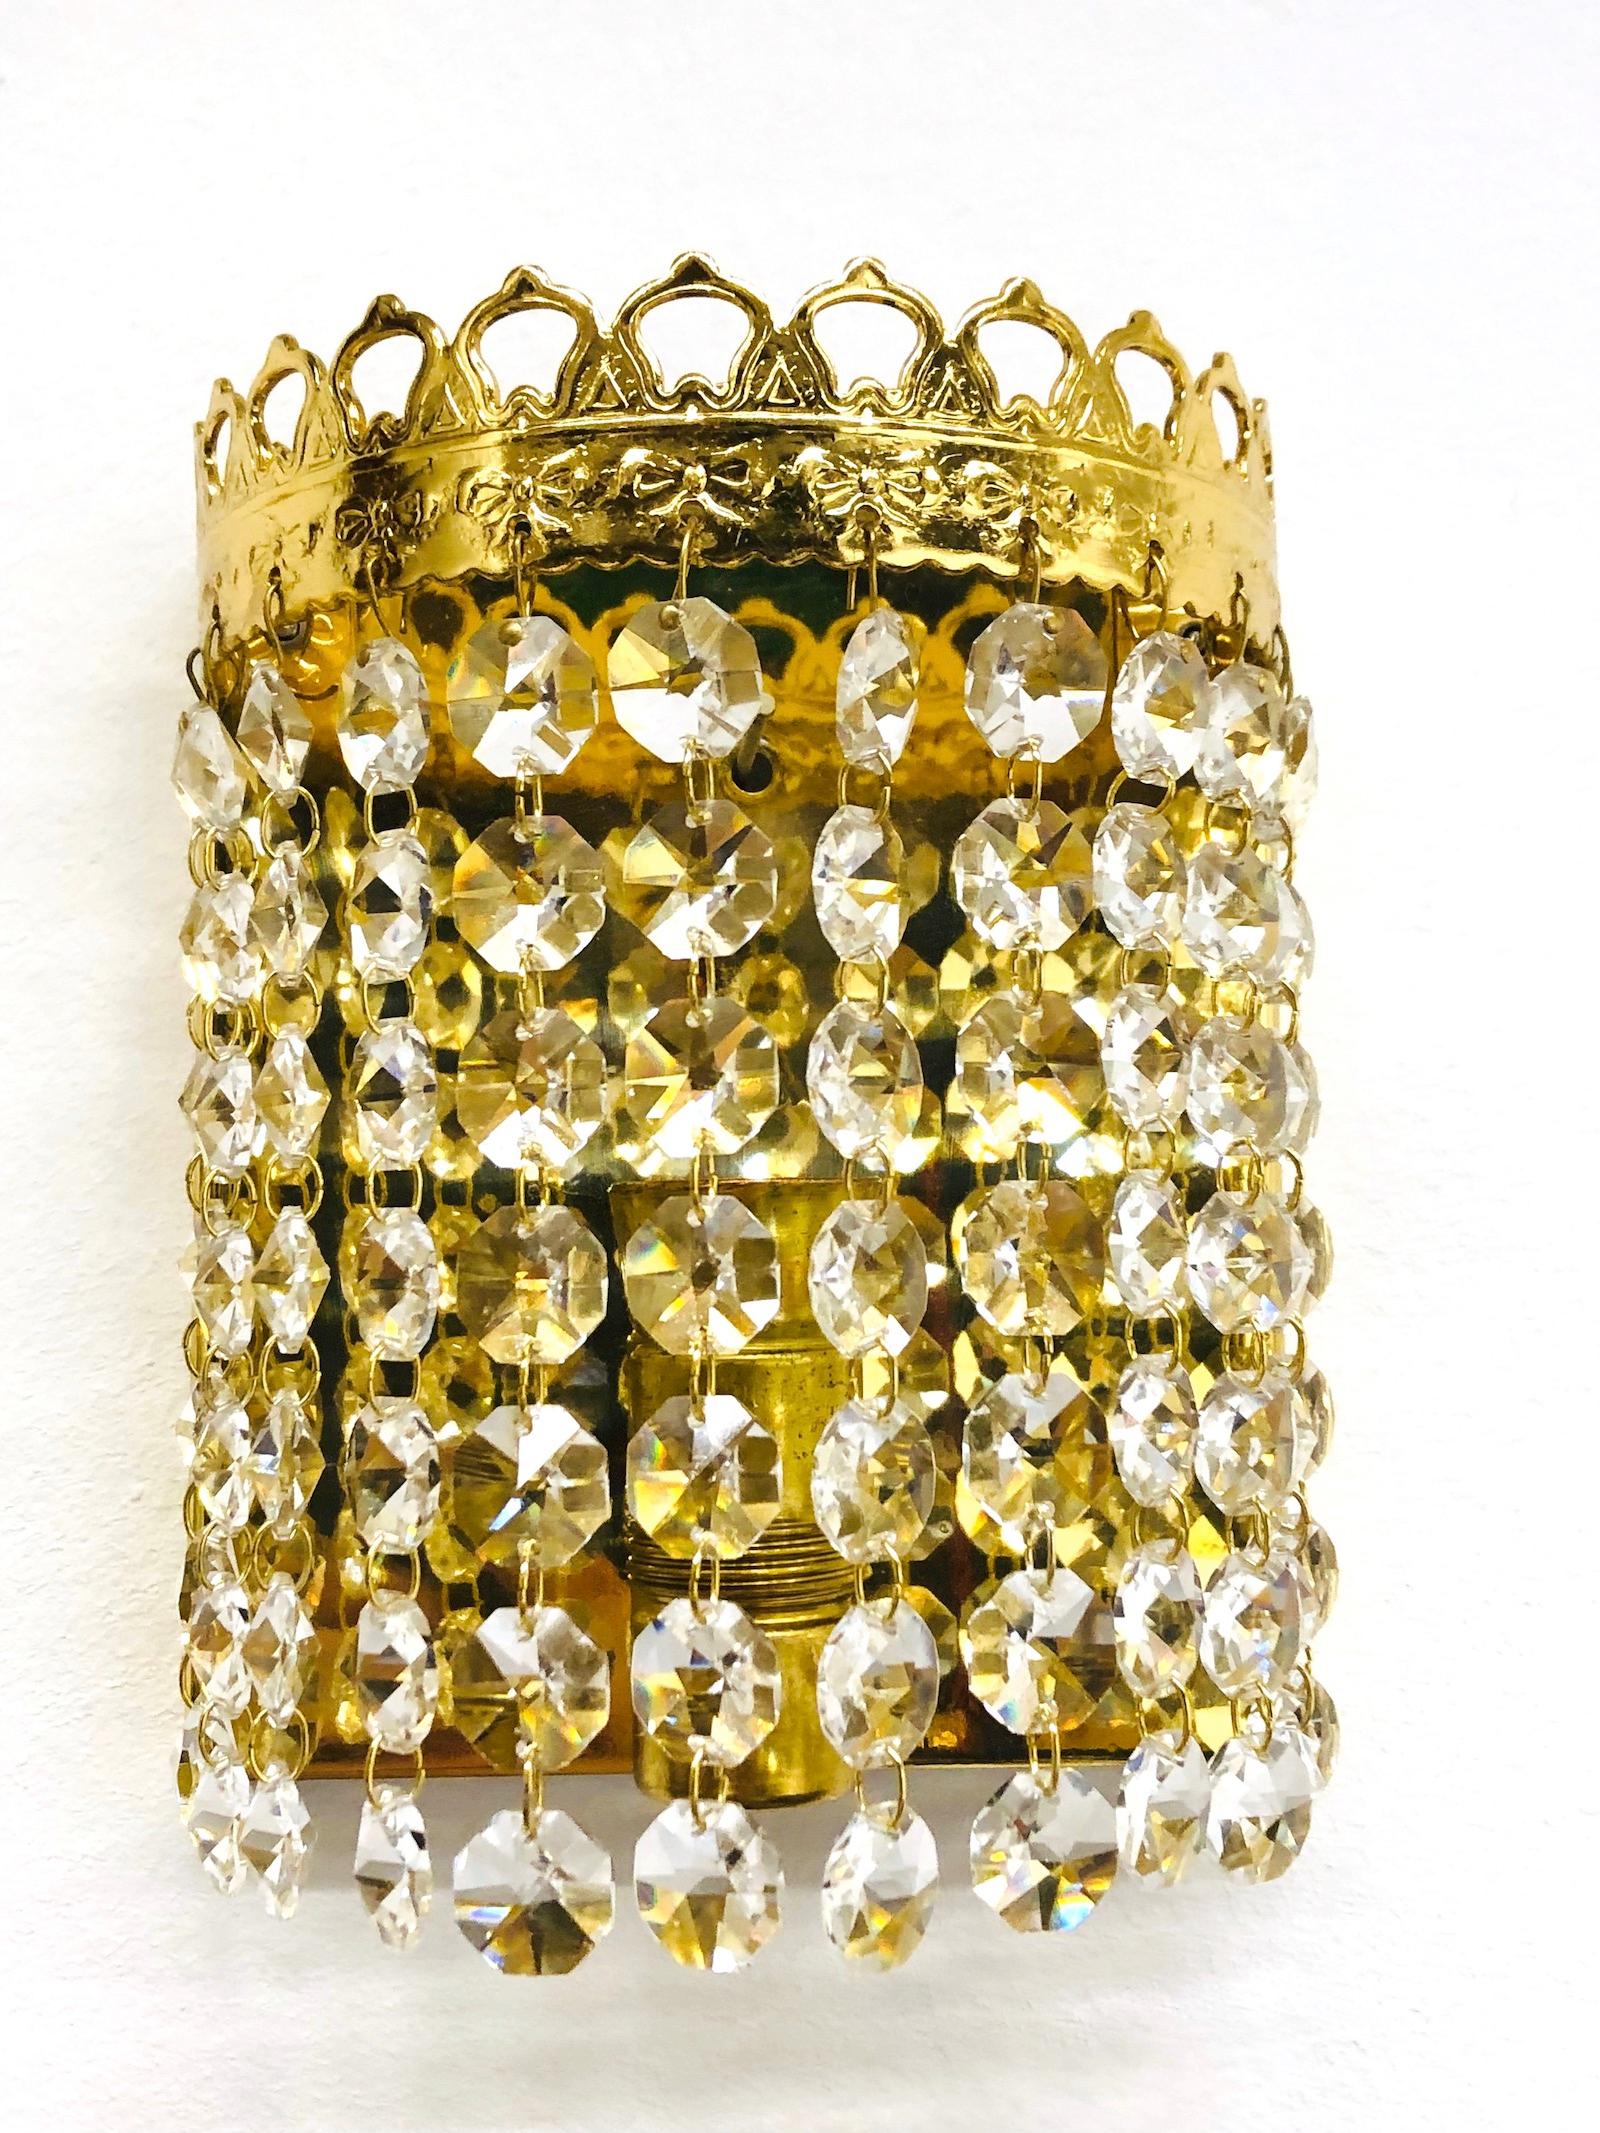 Une paire d'appliques fabriquées par Richard Essig, Allemagne. Magnifique verre en cristal avec fixation en métal. Grande taille et design étonnant. Apporte une touche d'élégance à la pièce. Chaque luminaire nécessite une ampoule européenne E 14 de